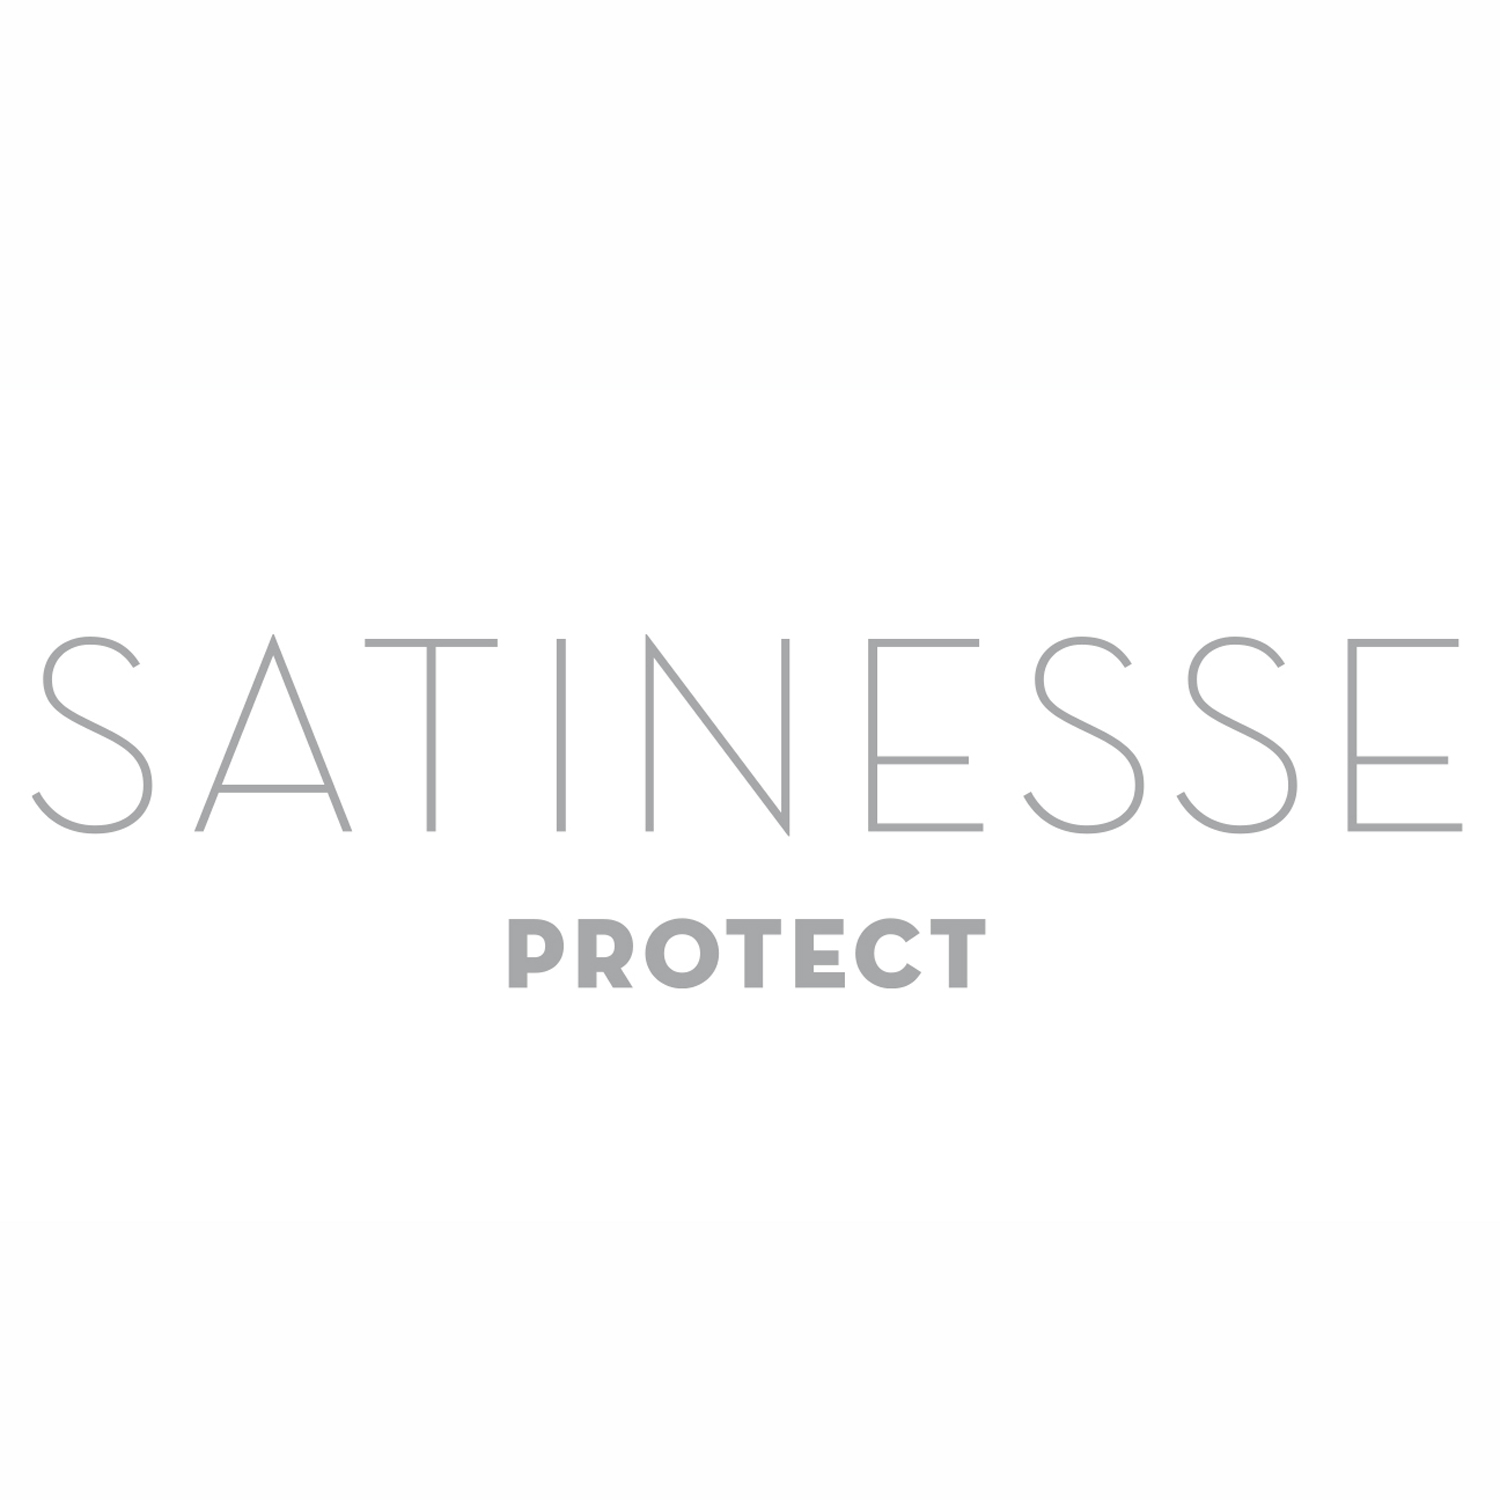 FORMESSE Matratzenschoner Satinesse Protect weiß 100x210cm